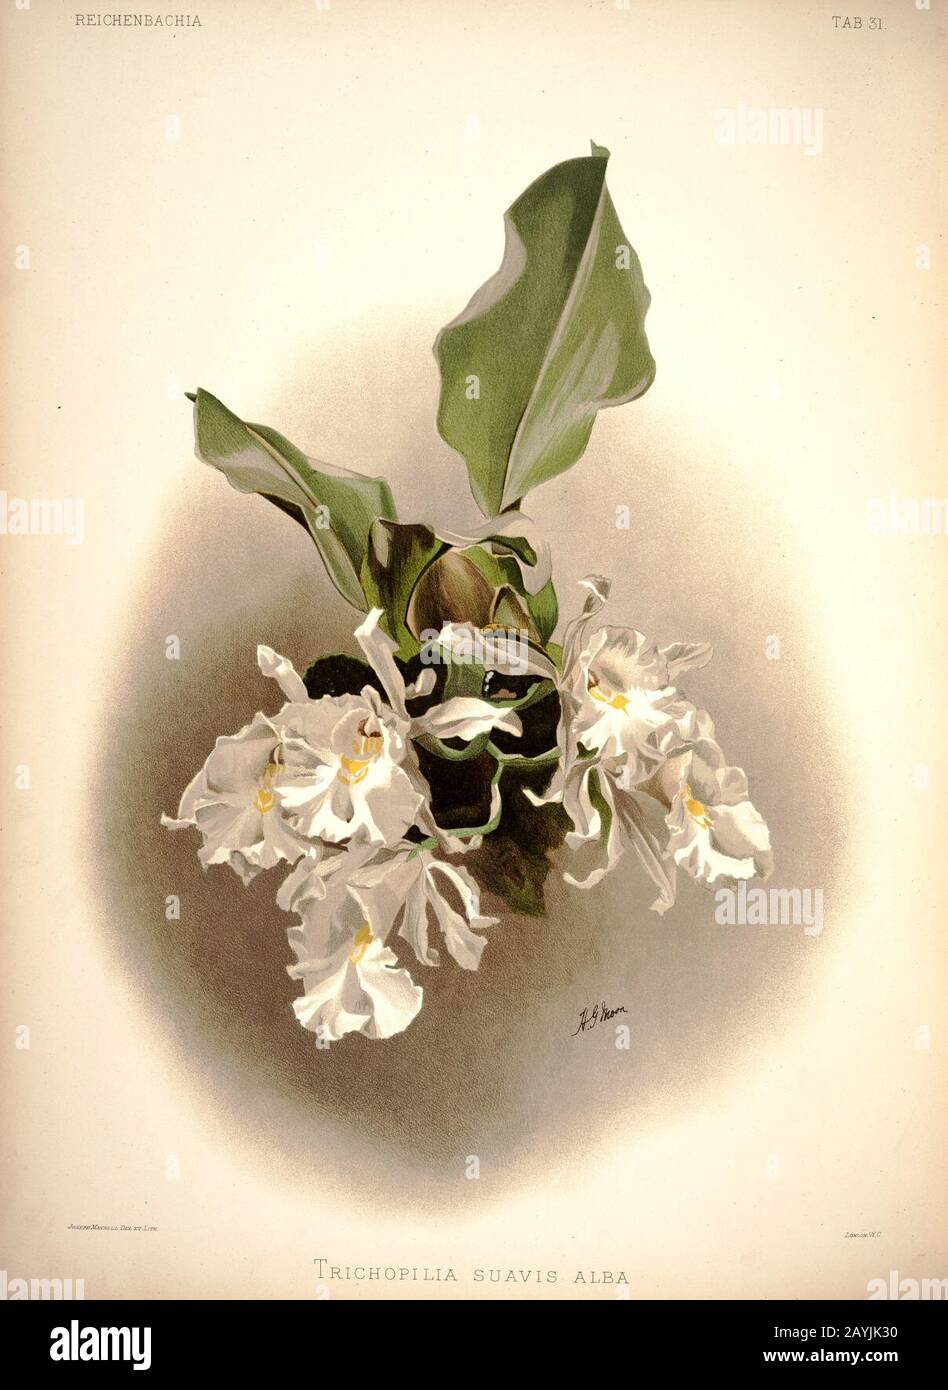 Frederick Sander - Reichenbachia I plate 31 (1888) - Trichopilia suavis alba. Stock Photo